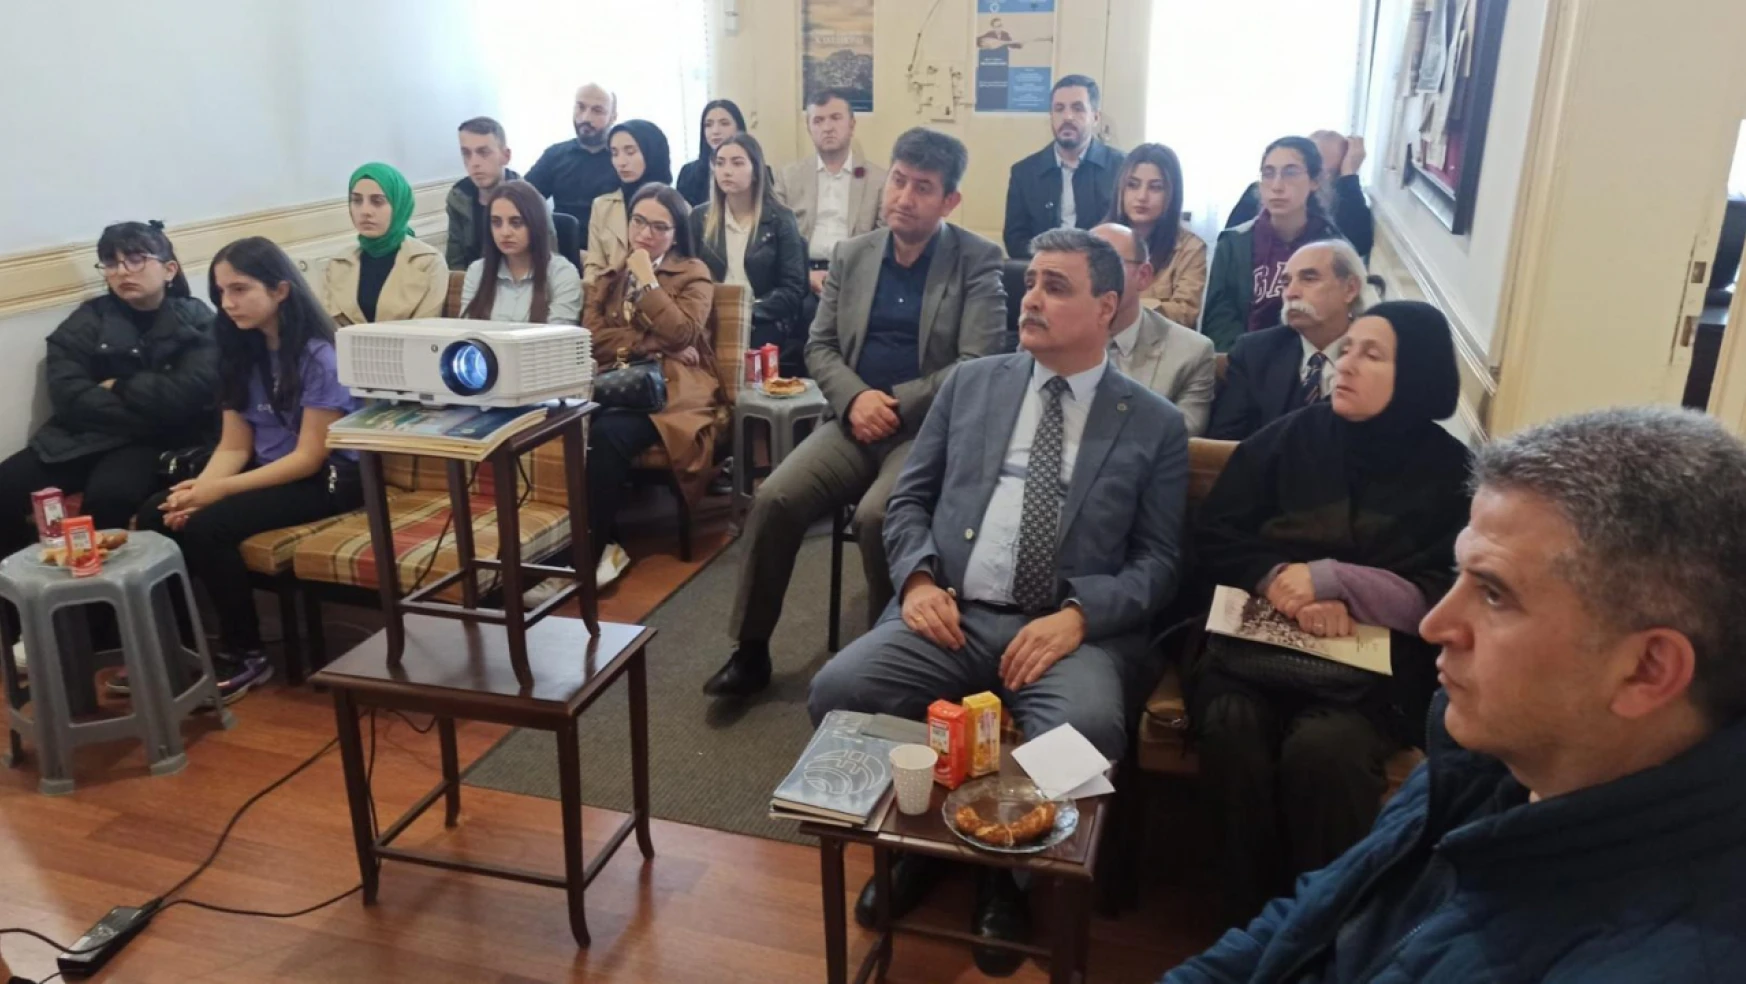 Kastamonu Üniversitesi'nde '3 Mayıs' konulu konferans